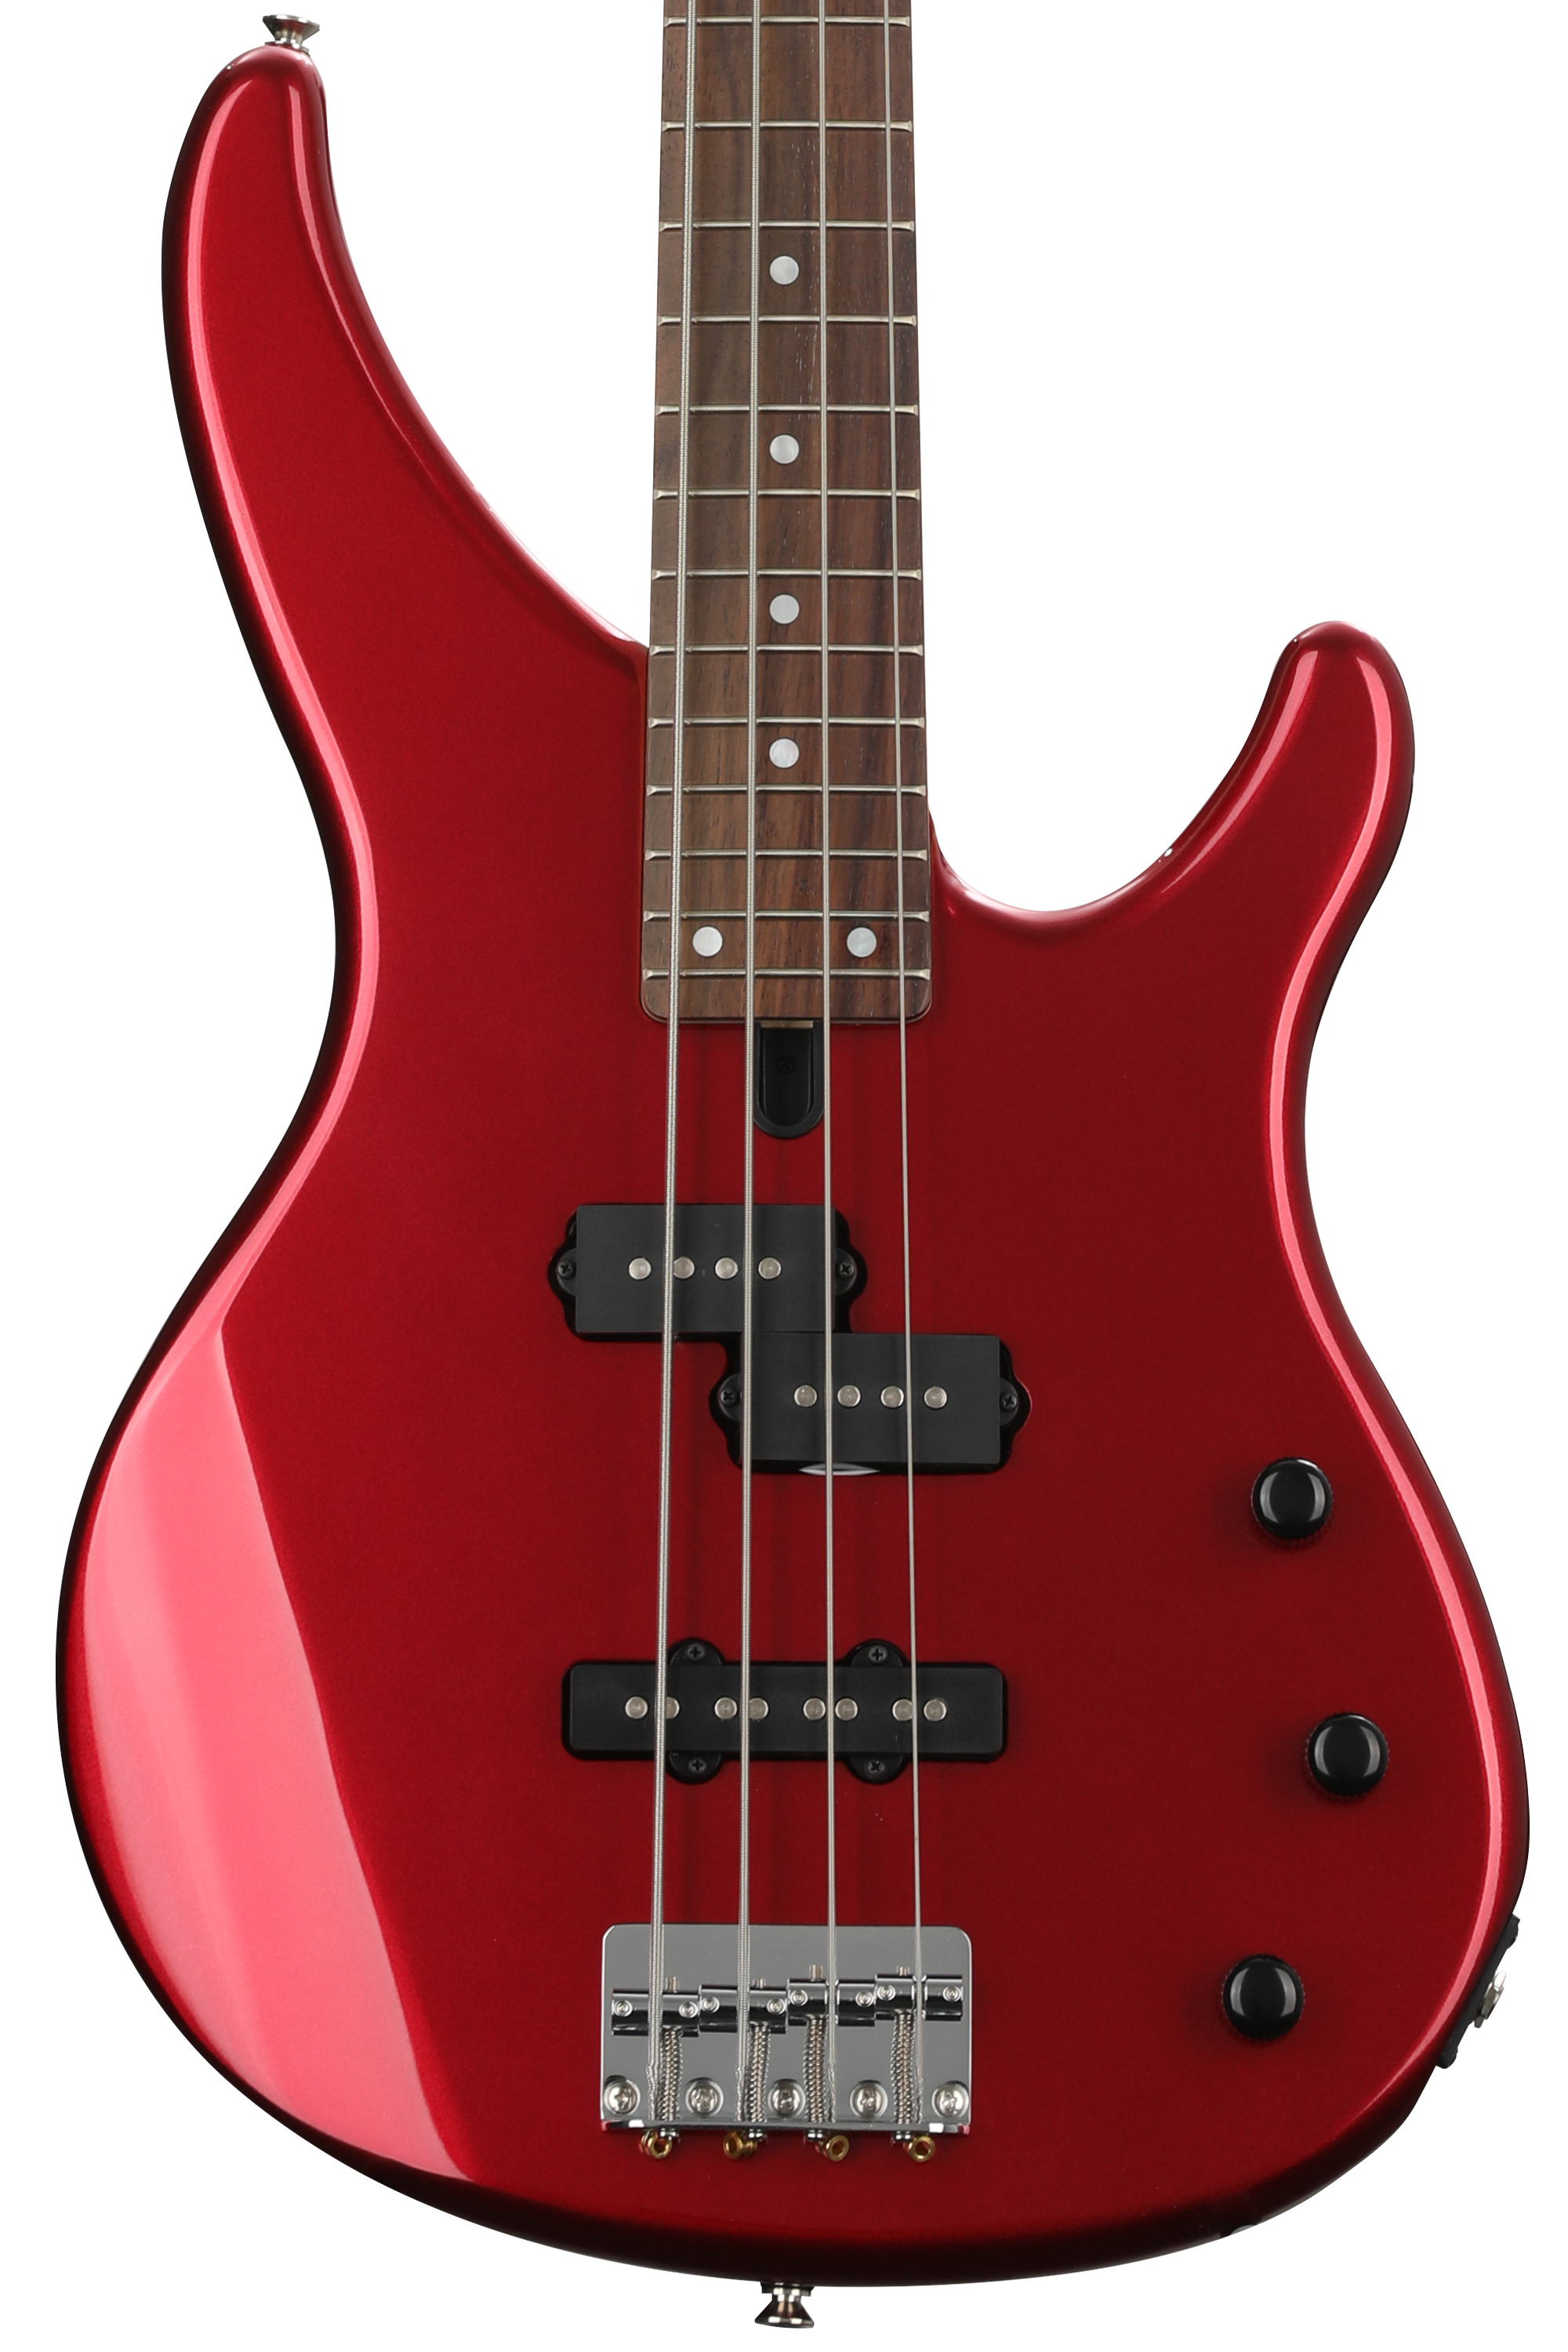 Bundled Item: Yamaha TRBX174 Bass Guitar - Red Metallic